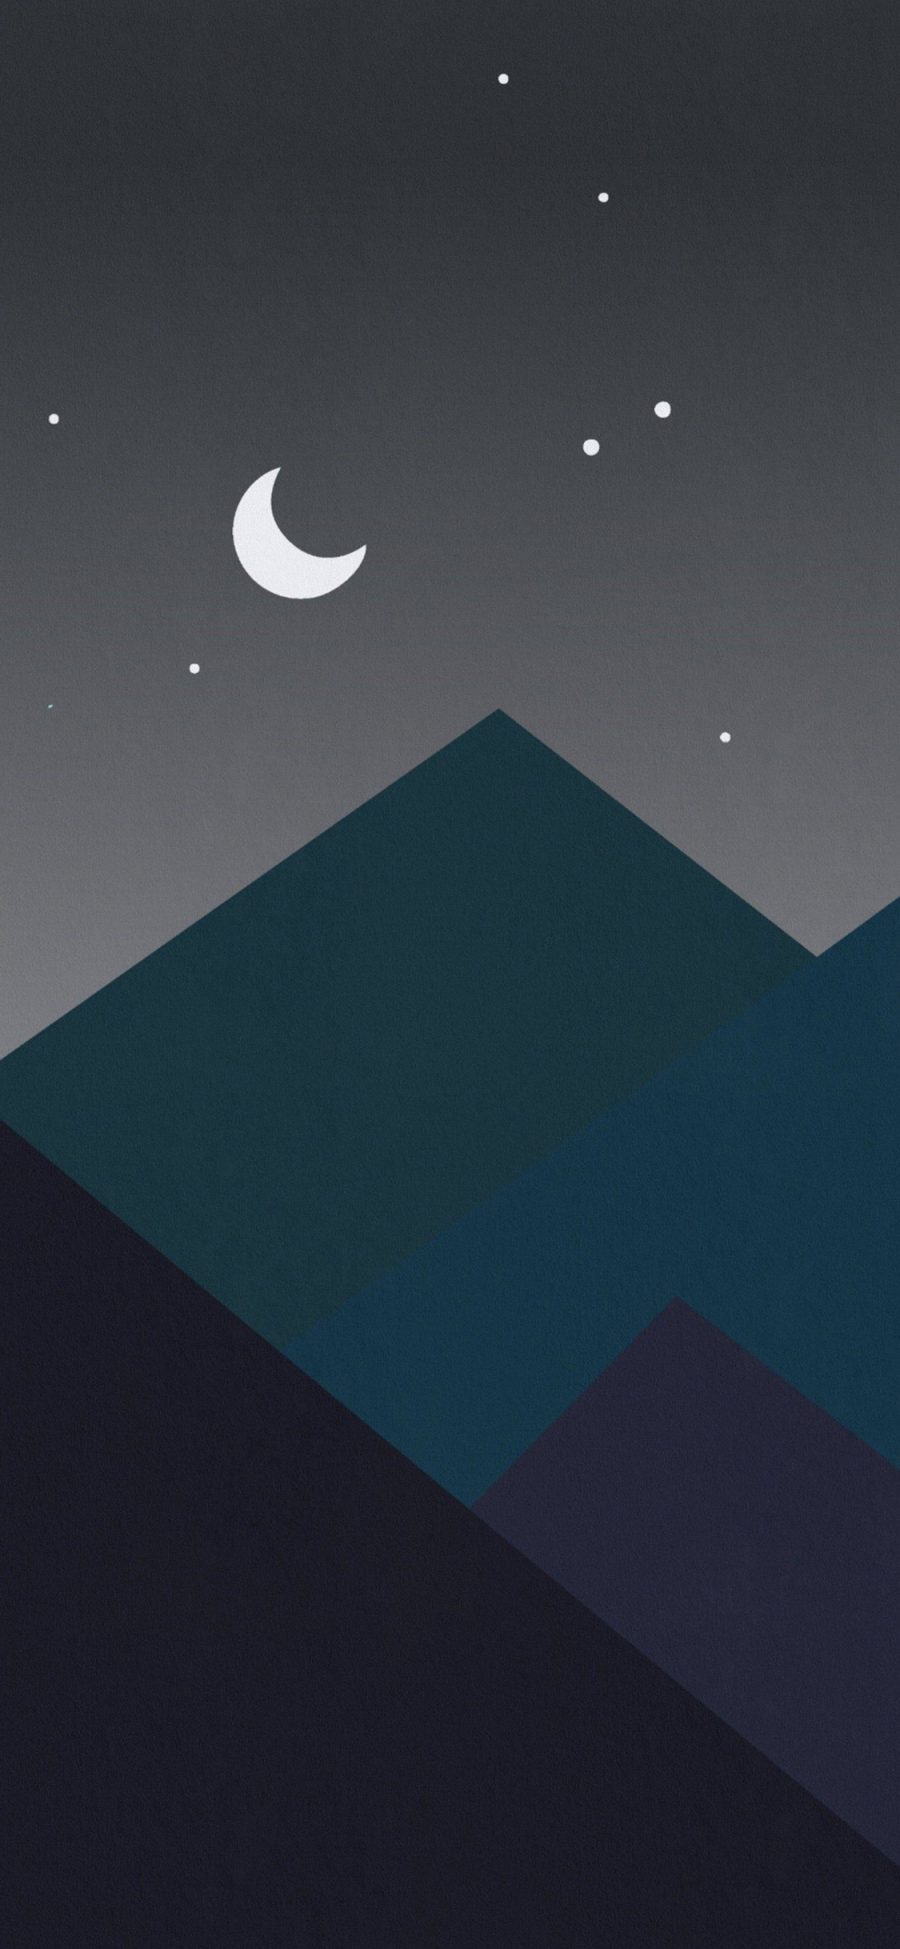 [2436×1125]插图 星空 夜景 月牙 星星 苹果手机动漫壁纸图片